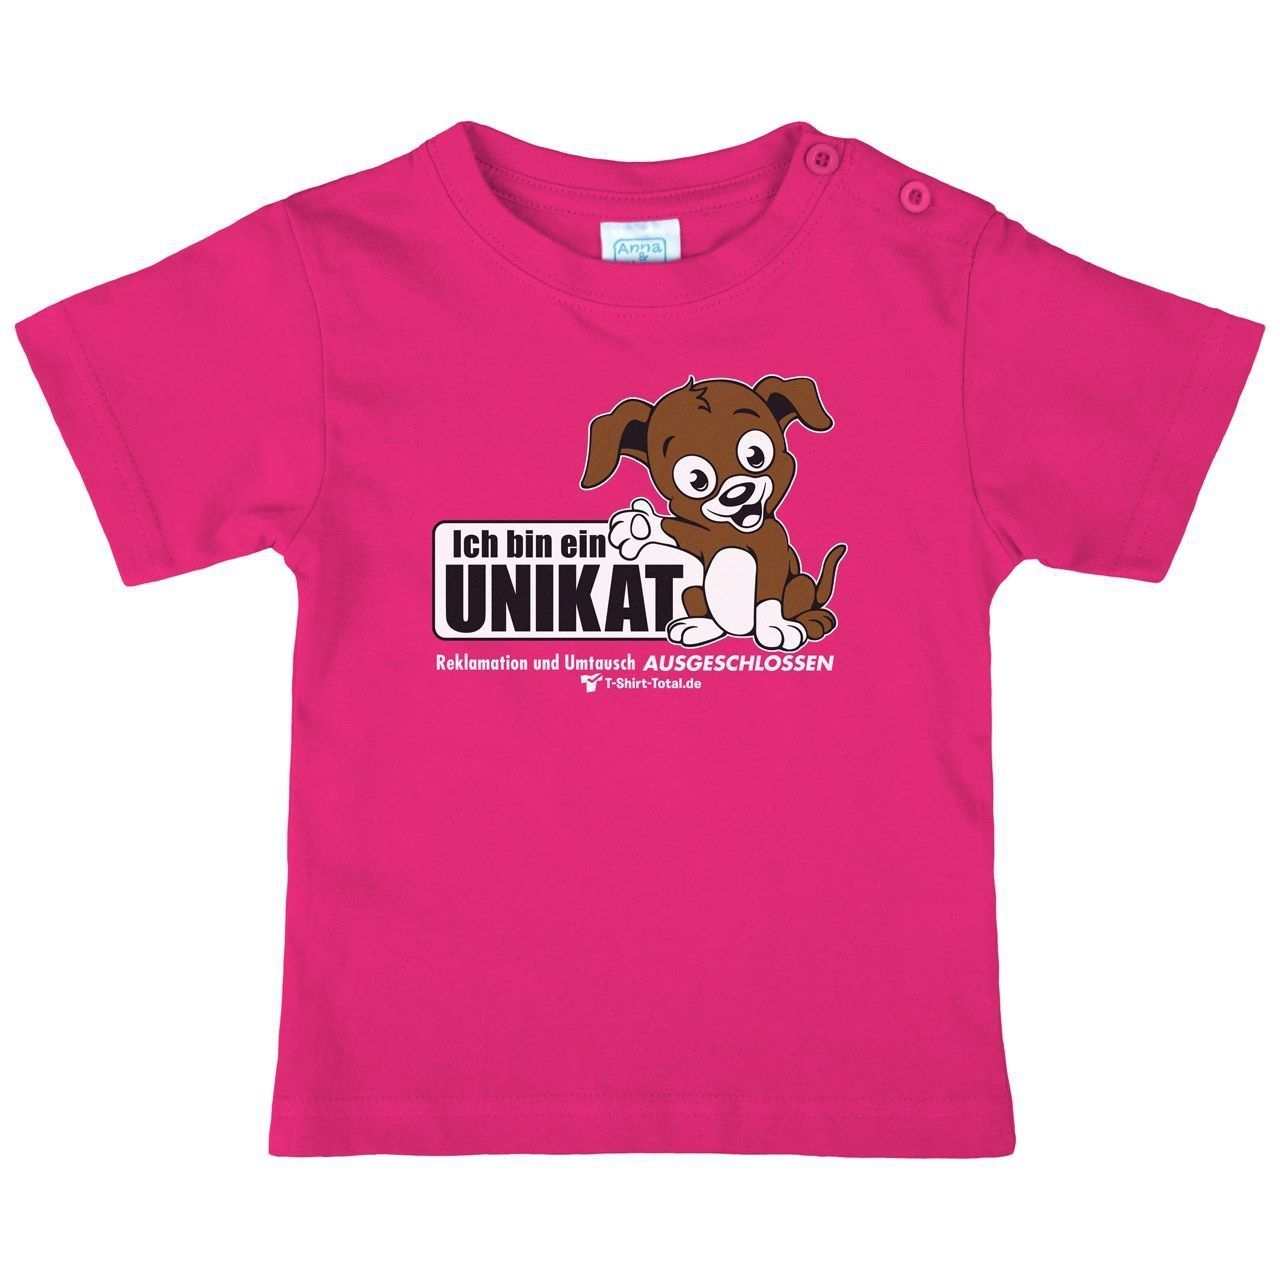 Unikat Kinder T-Shirt pink 98